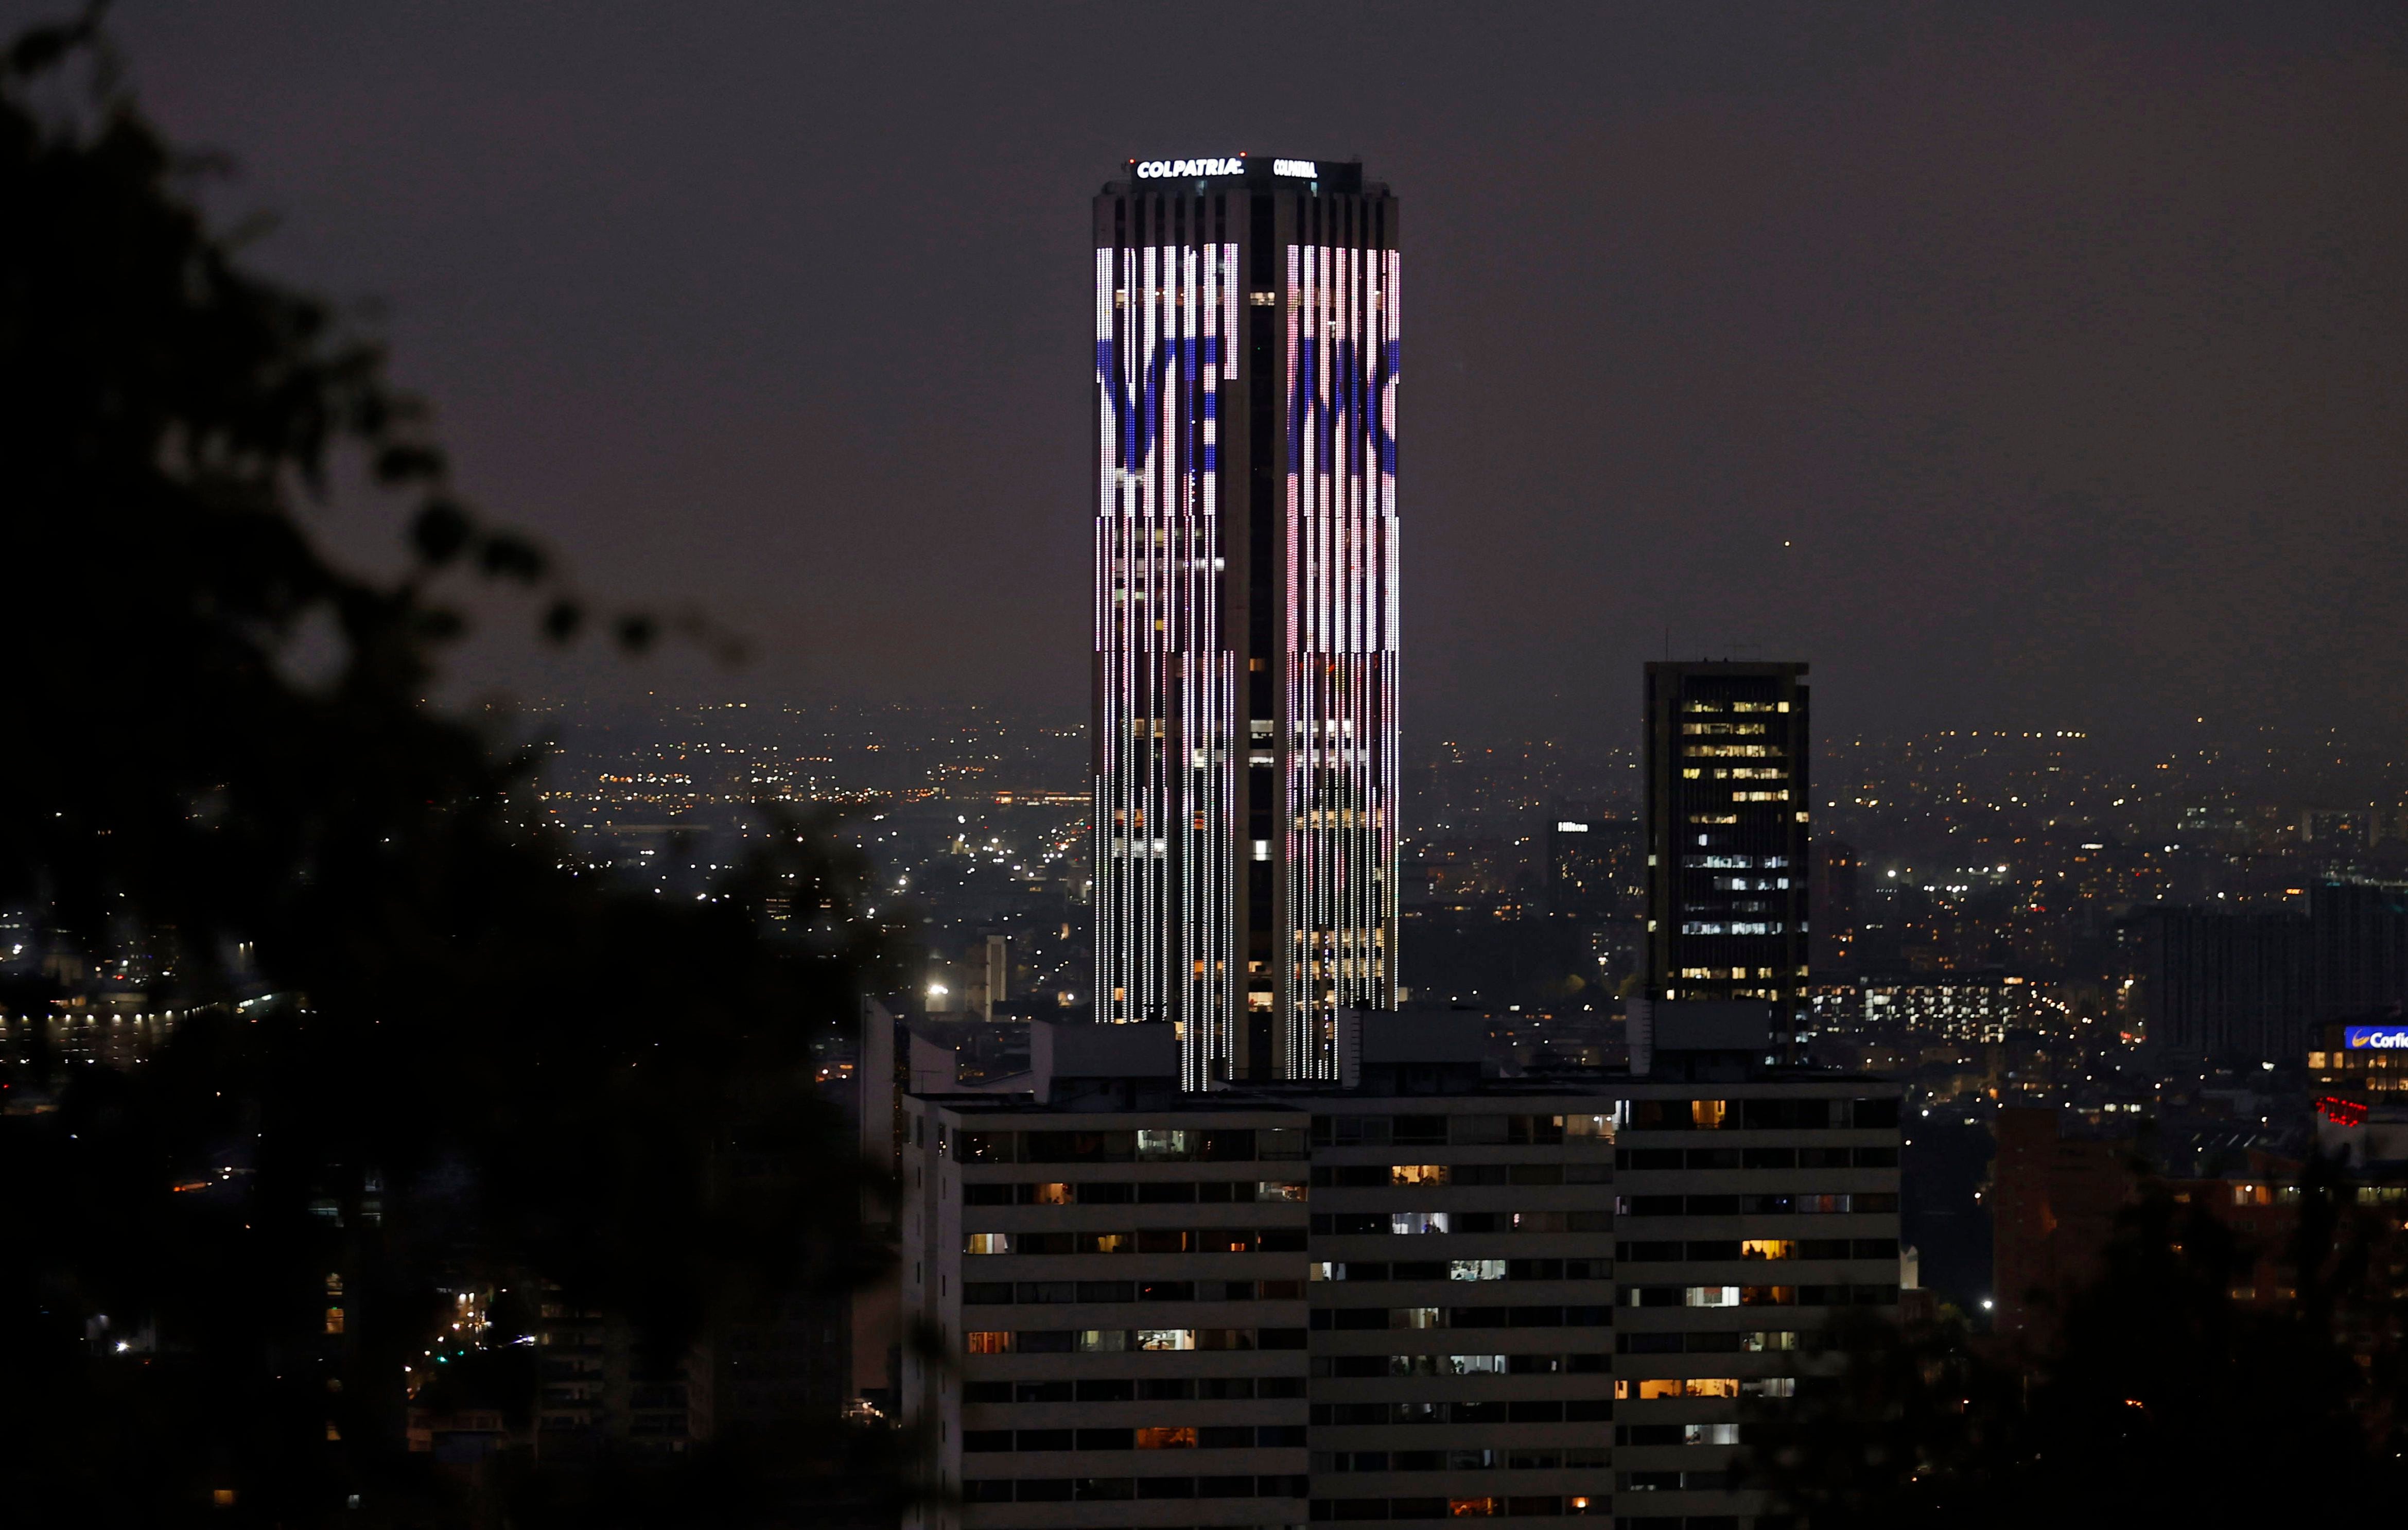 Fotografía donde se ve La Torre Colpatria, uno de los edificios más altos de Colombia, iluminada con imágenes alusivas a 'En agosto nos vemos', novela inédita de Gabriel García Márquez. EFE/ Mauricio Dueñas Castañeda